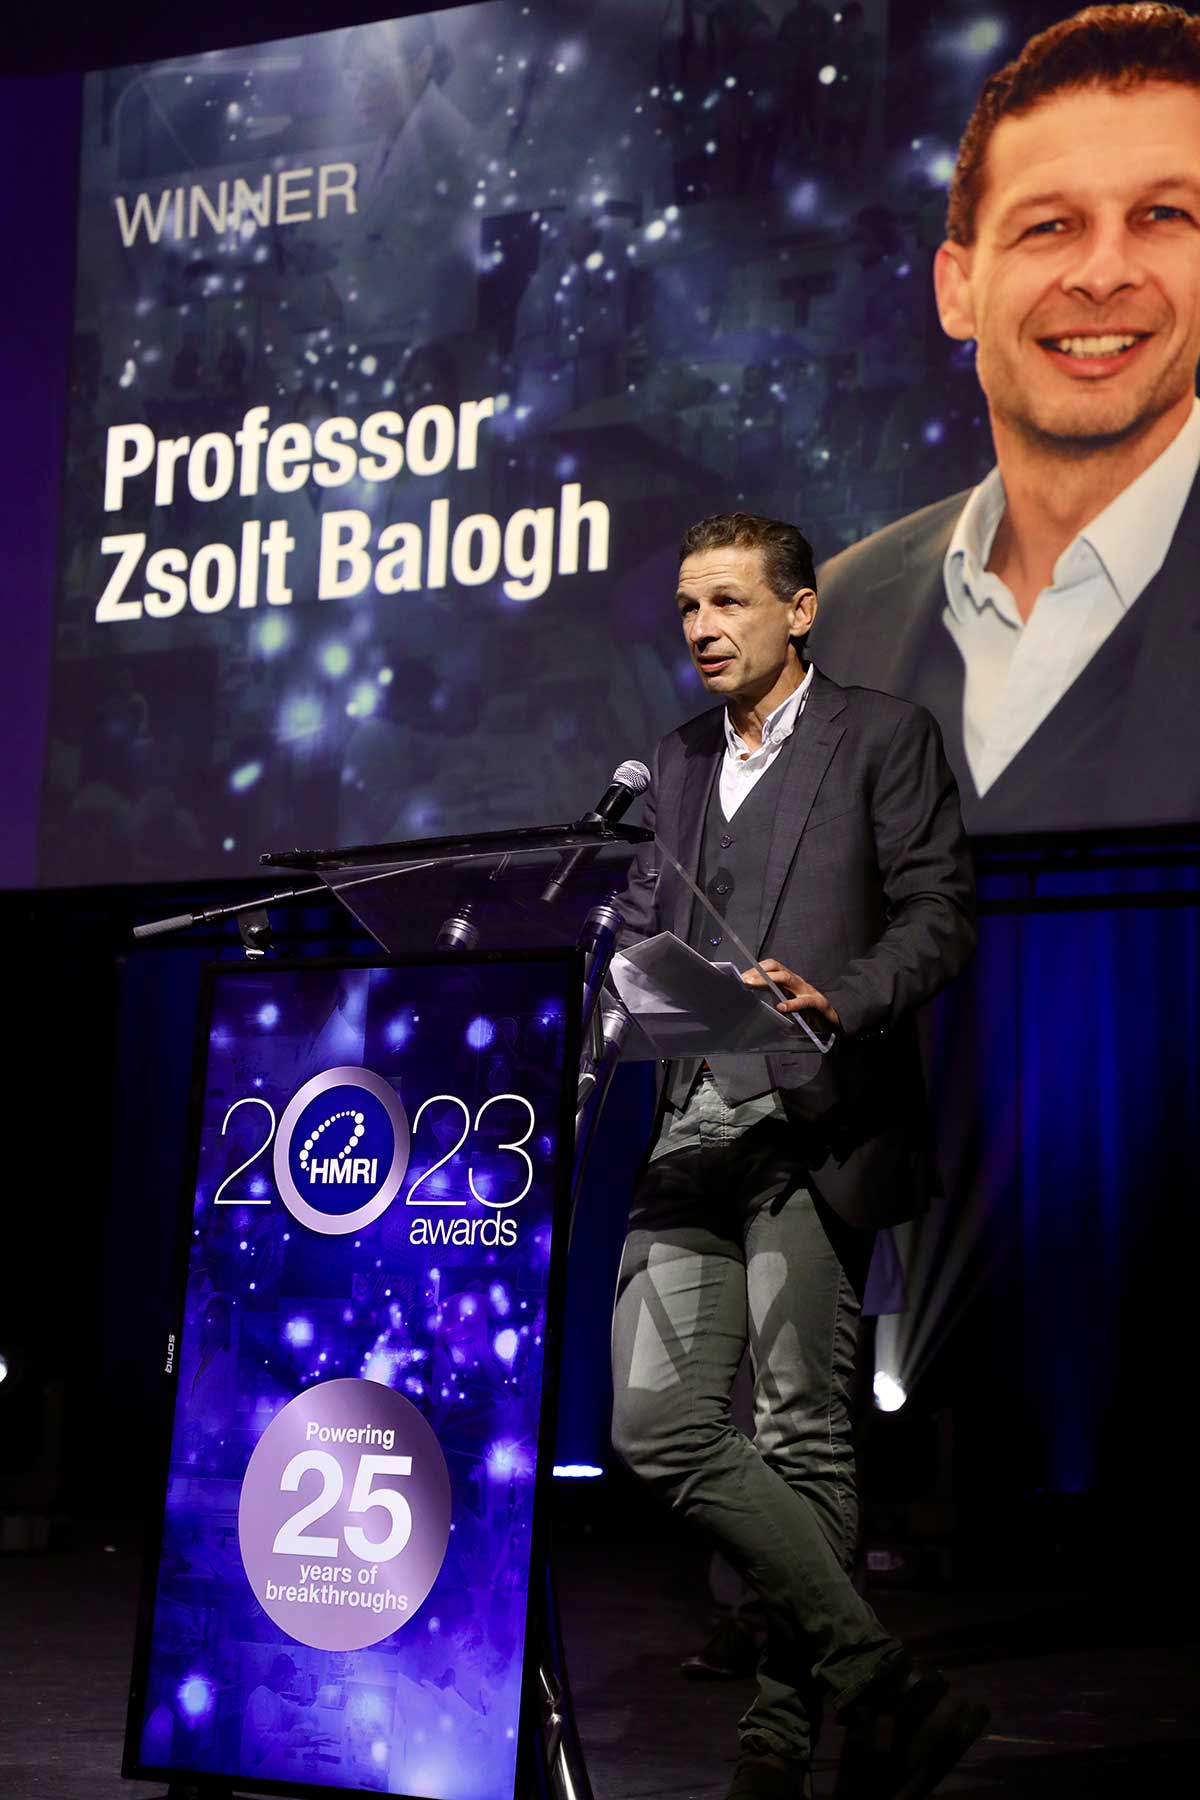 Professor Zsolt Balogh